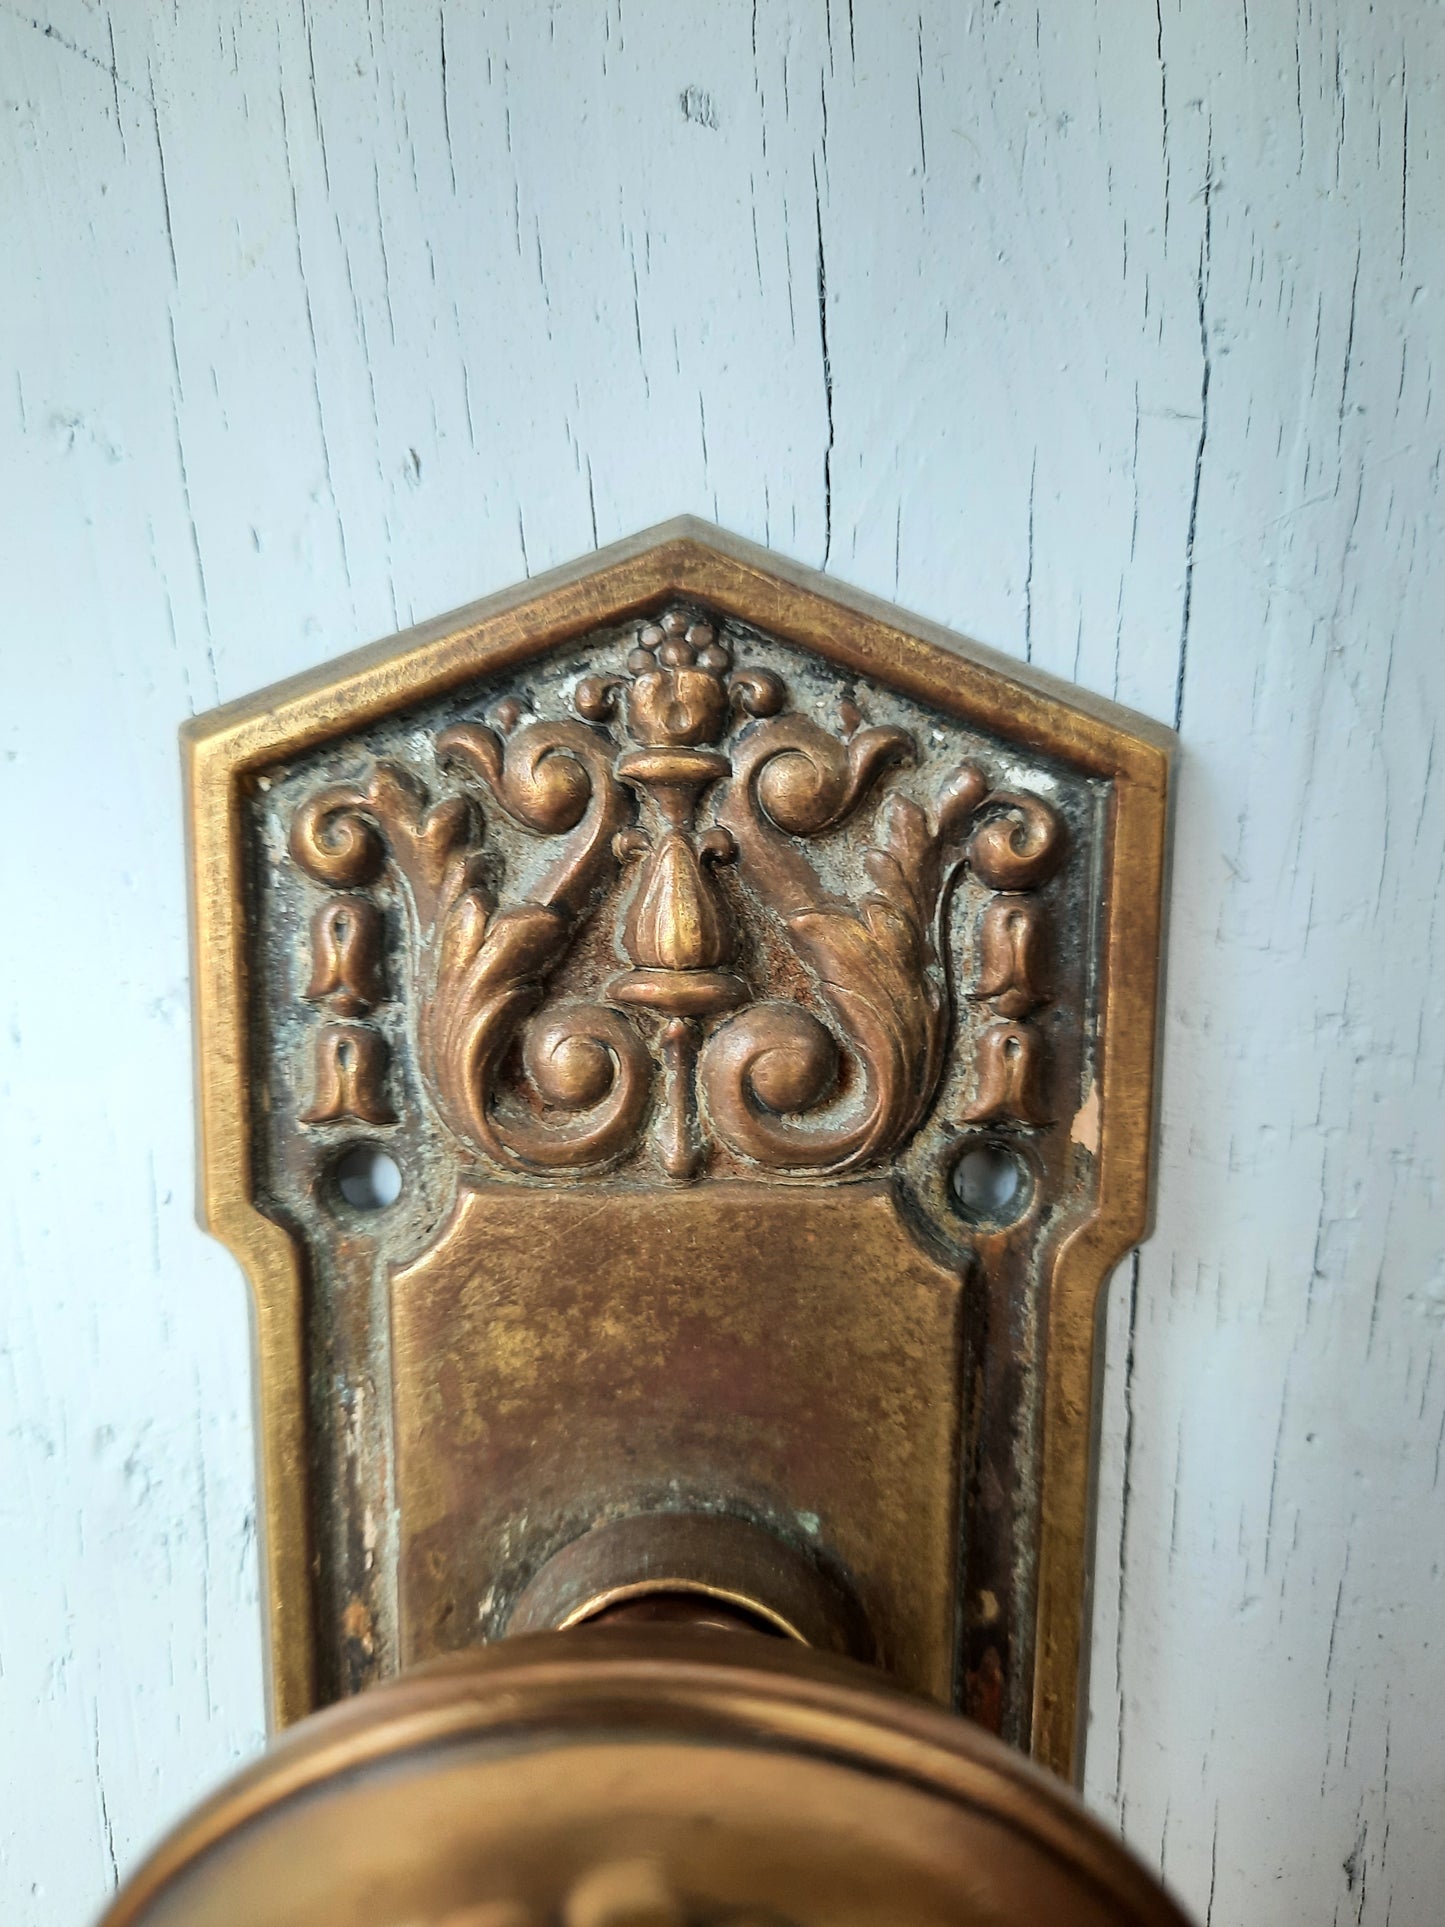 Fancy Designed Door Knobs & Plates, Complete Set Victorian Door Hardware, Ornate Stamped Brass Doorknobs and Backplates 120601